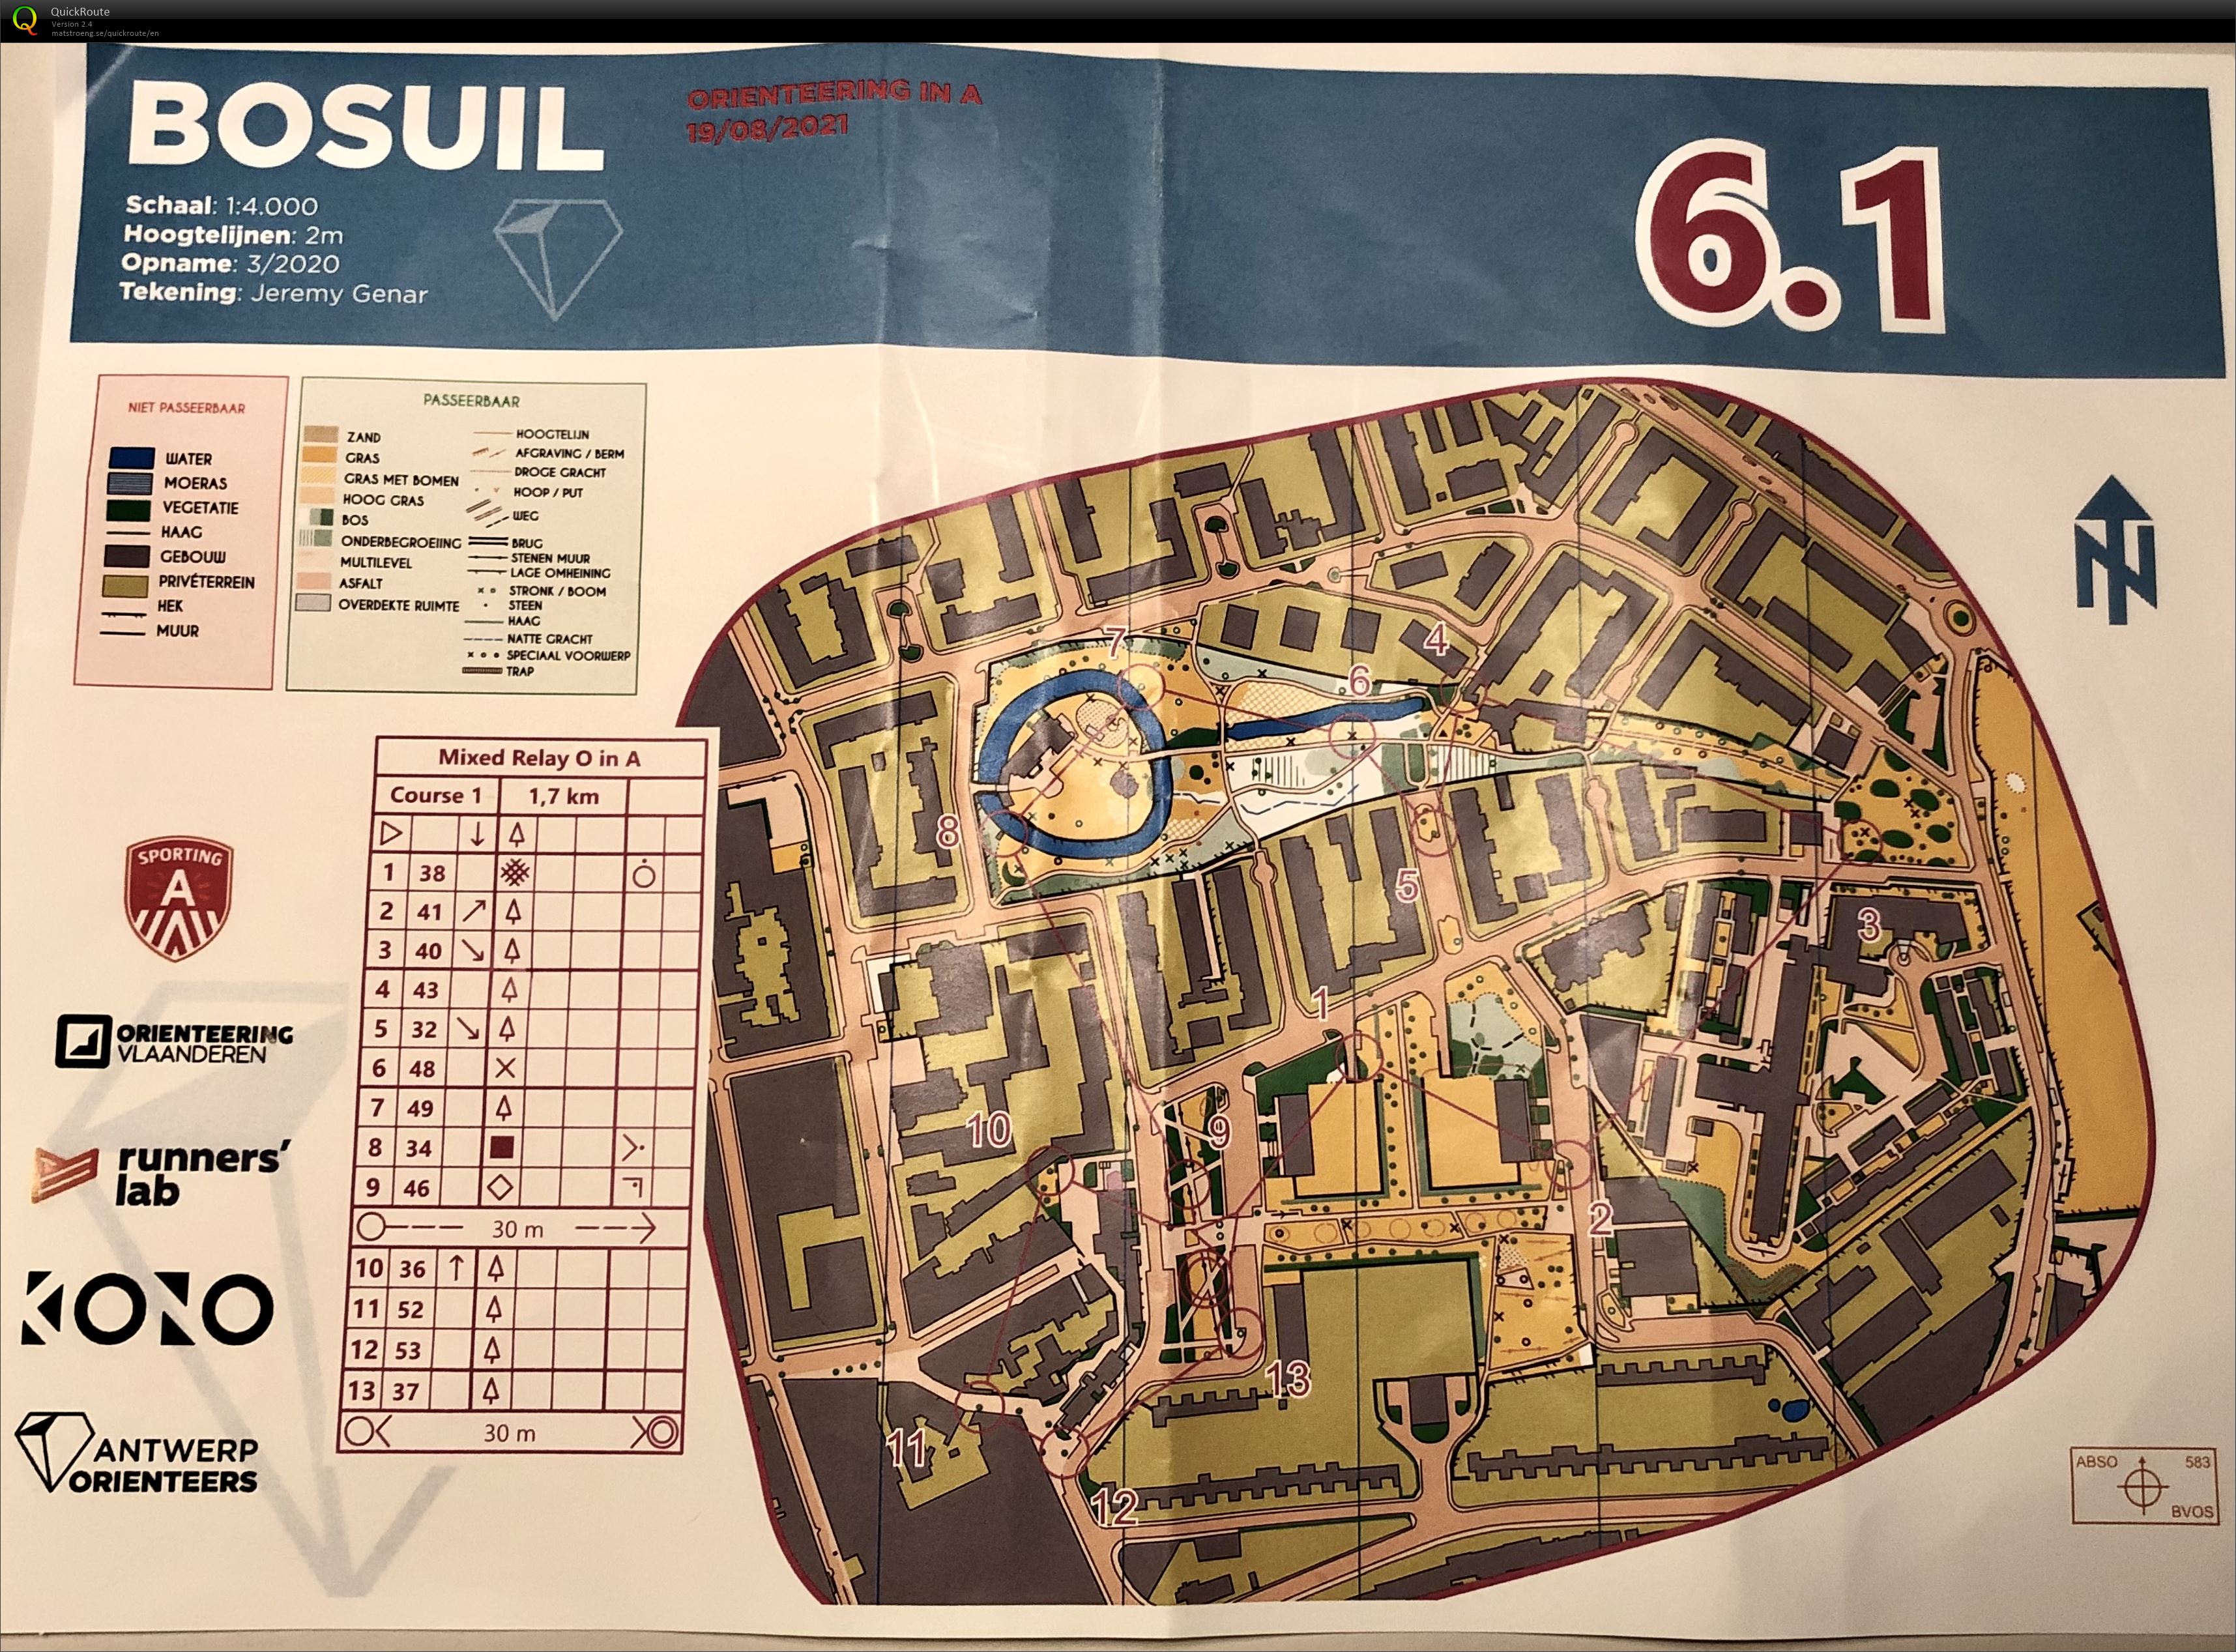 Antwerp Orienteers Team Relay Bosuil 6.3 (19.08.2021)